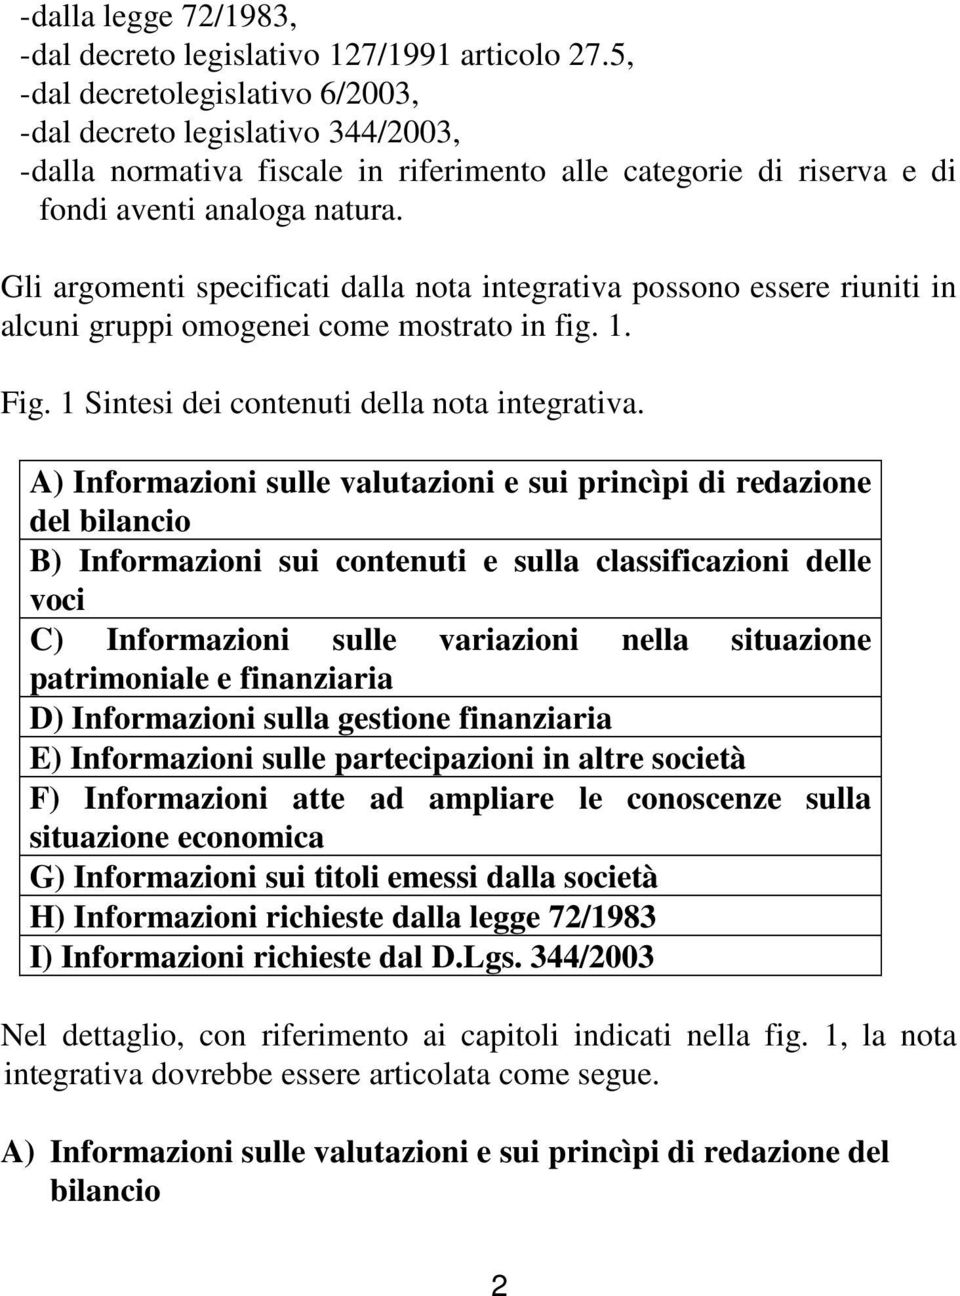 Gli argomenti specificati dalla nota integrativa possono essere riuniti in alcuni gruppi omogenei come mostrato in fig. 1. Fig. 1 Sintesi dei contenuti della nota integrativa.